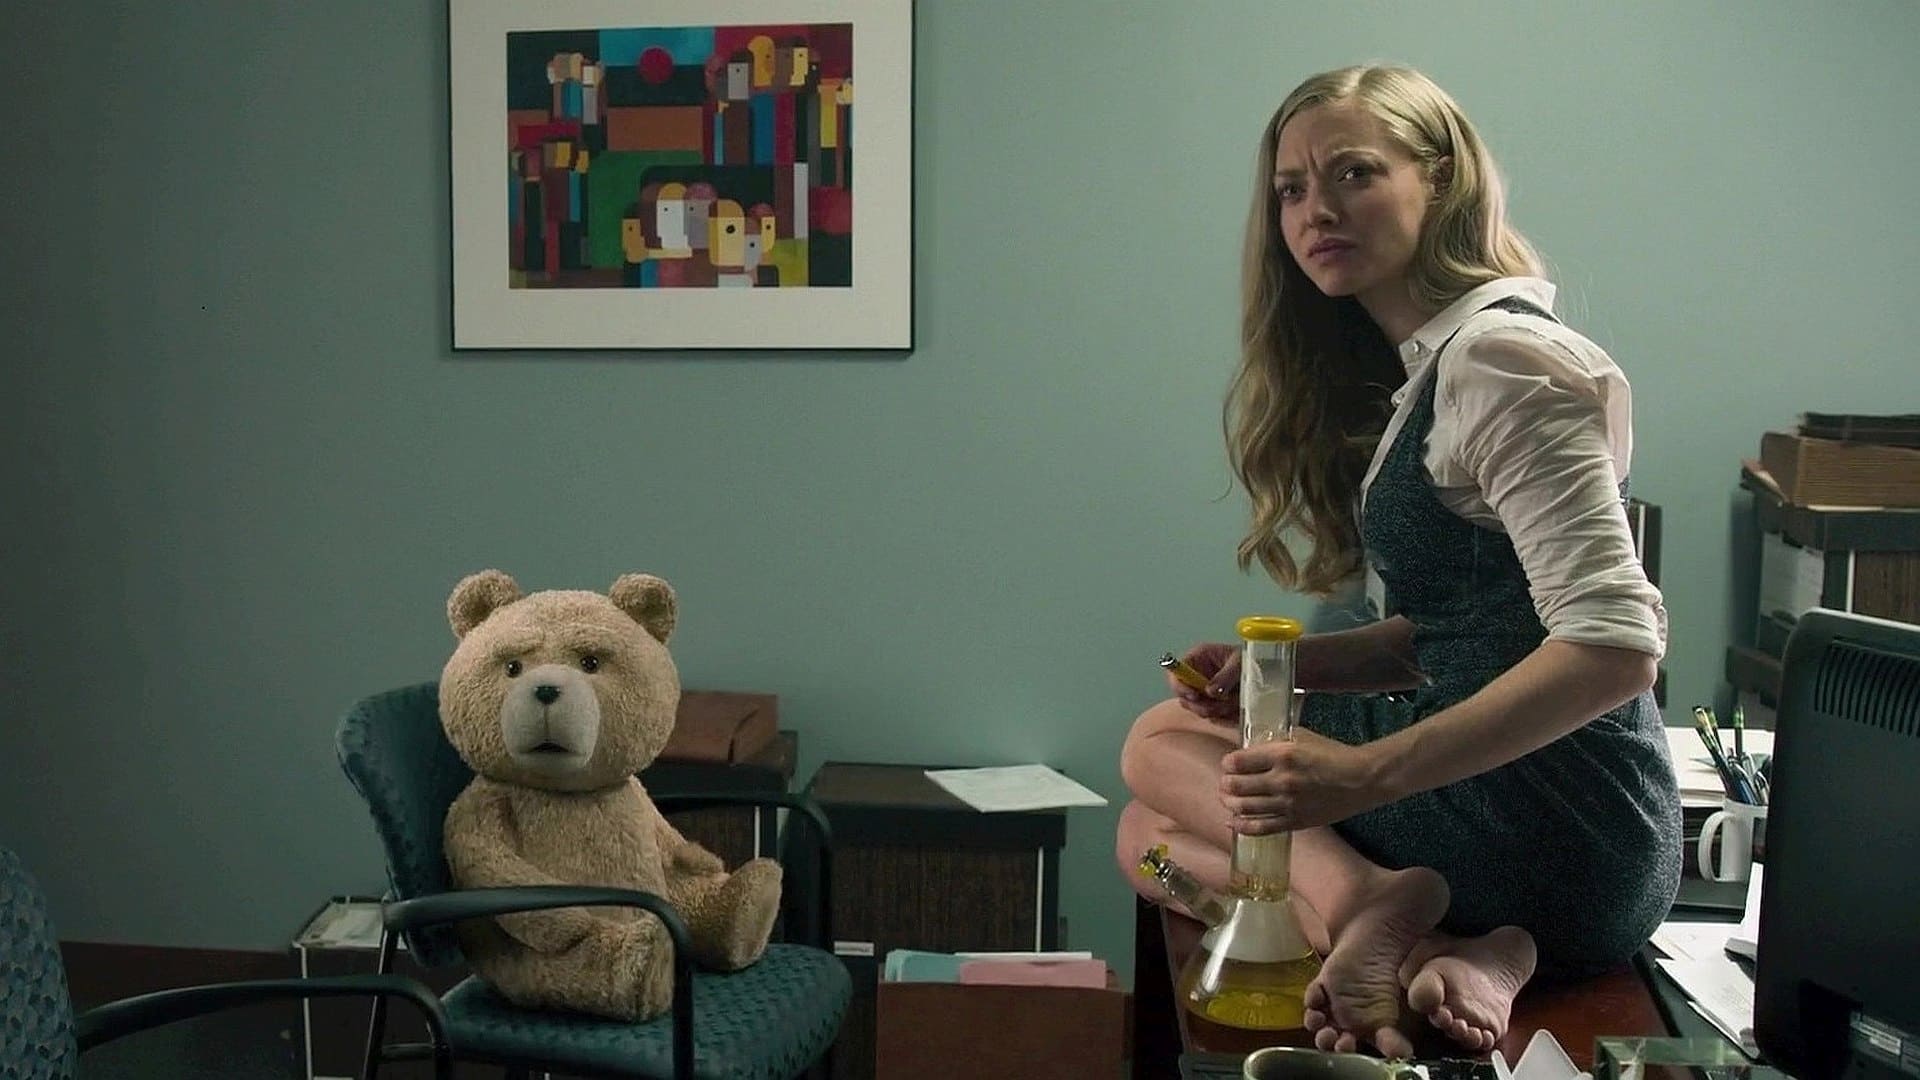 泰迪熊2 (2015)